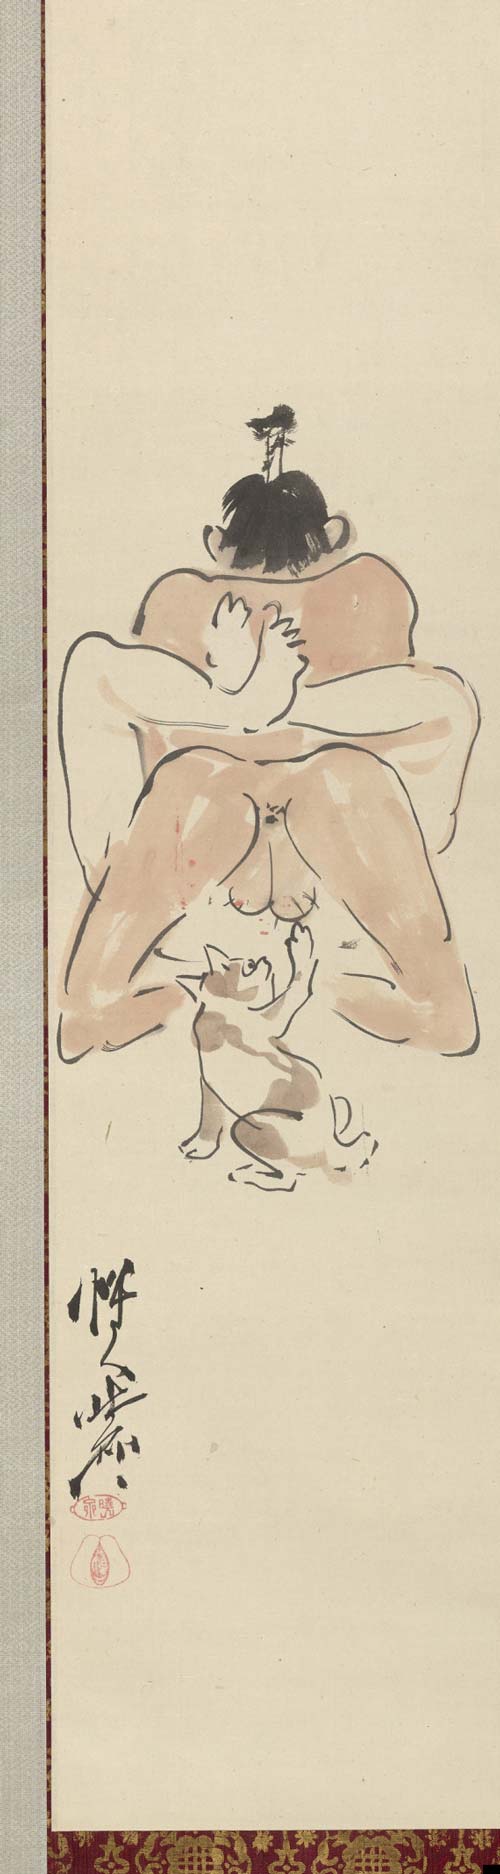 5. Сюнга— эротическая гравюра укиё-э.